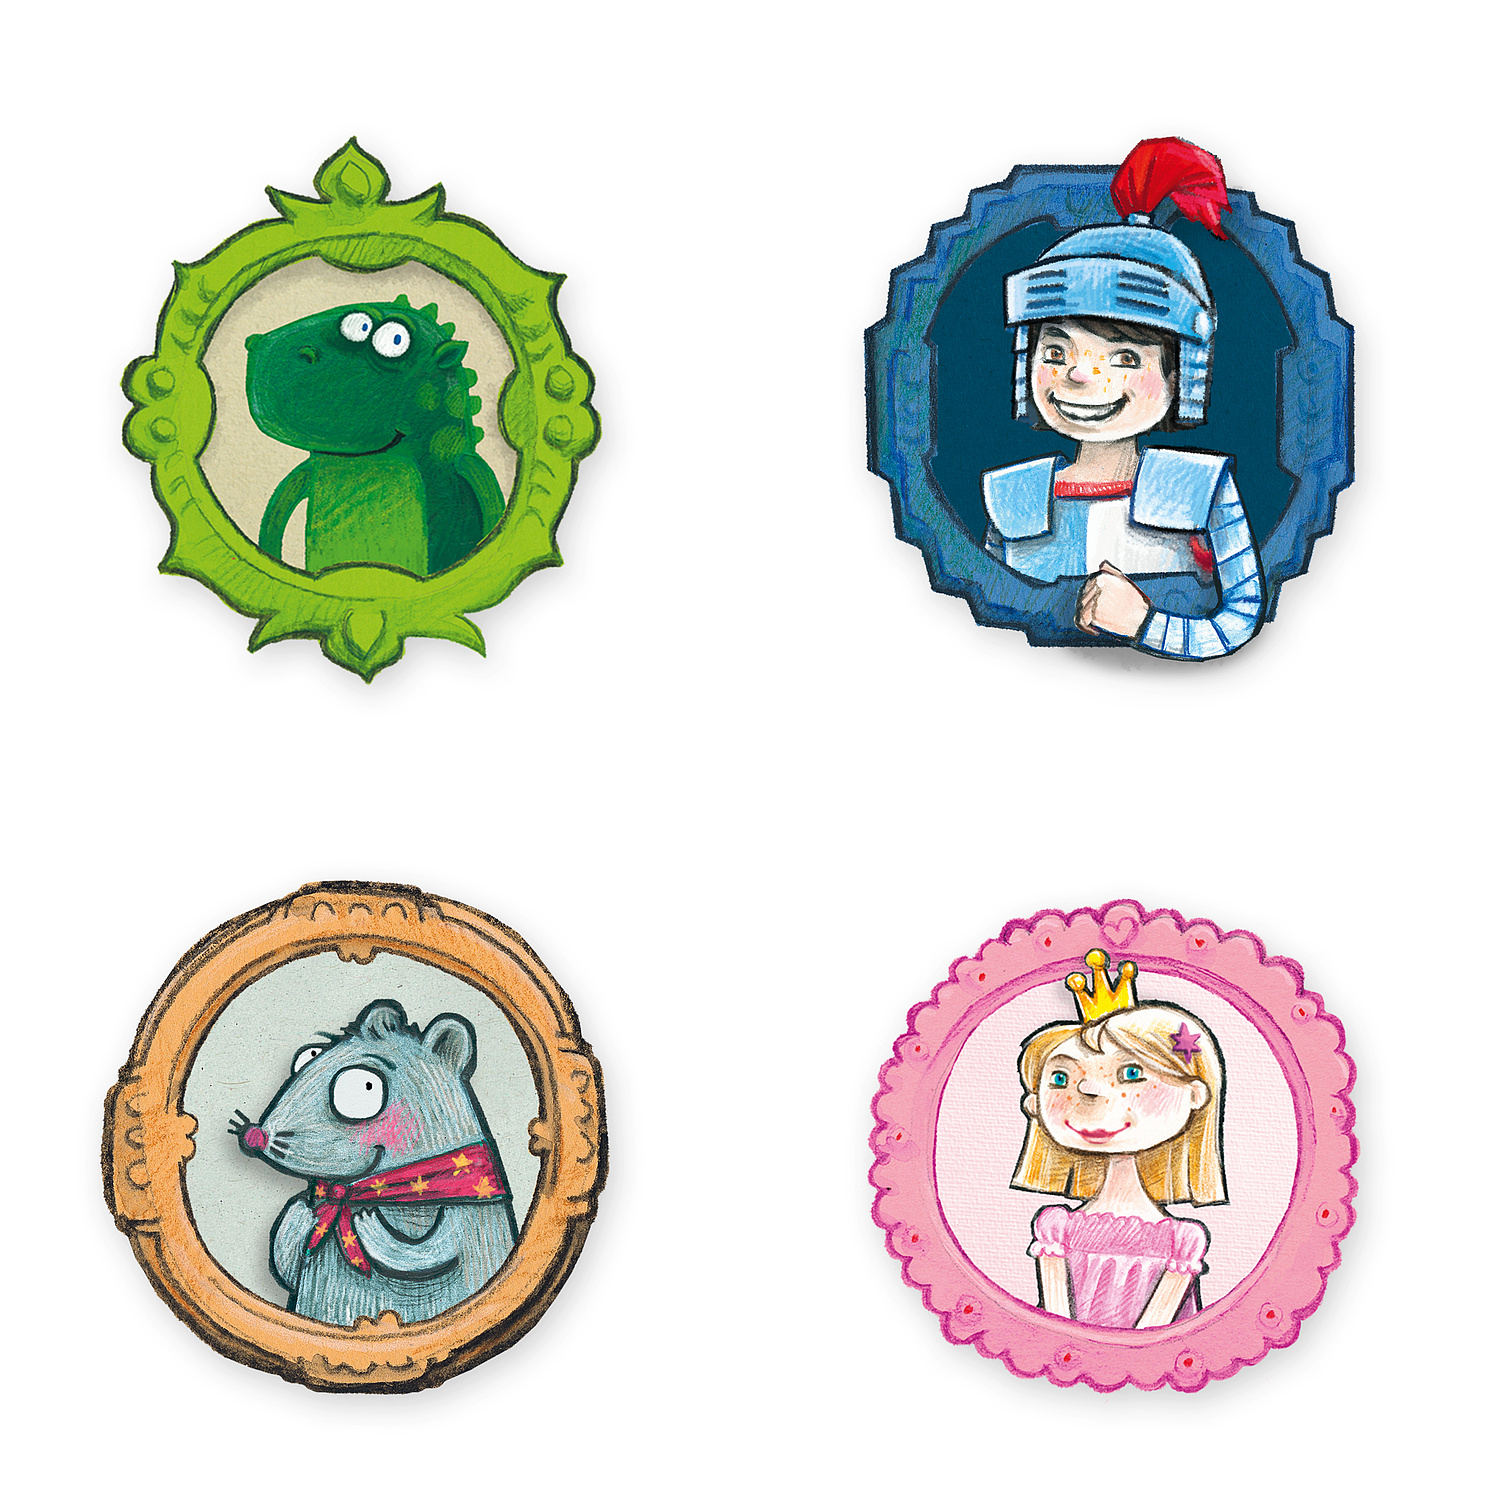 Detailansicht der Charaktere der App-Creative Kids mit Frosch, Ritter, Maus und Prinzessin  (© Papenfuss | Atelier)